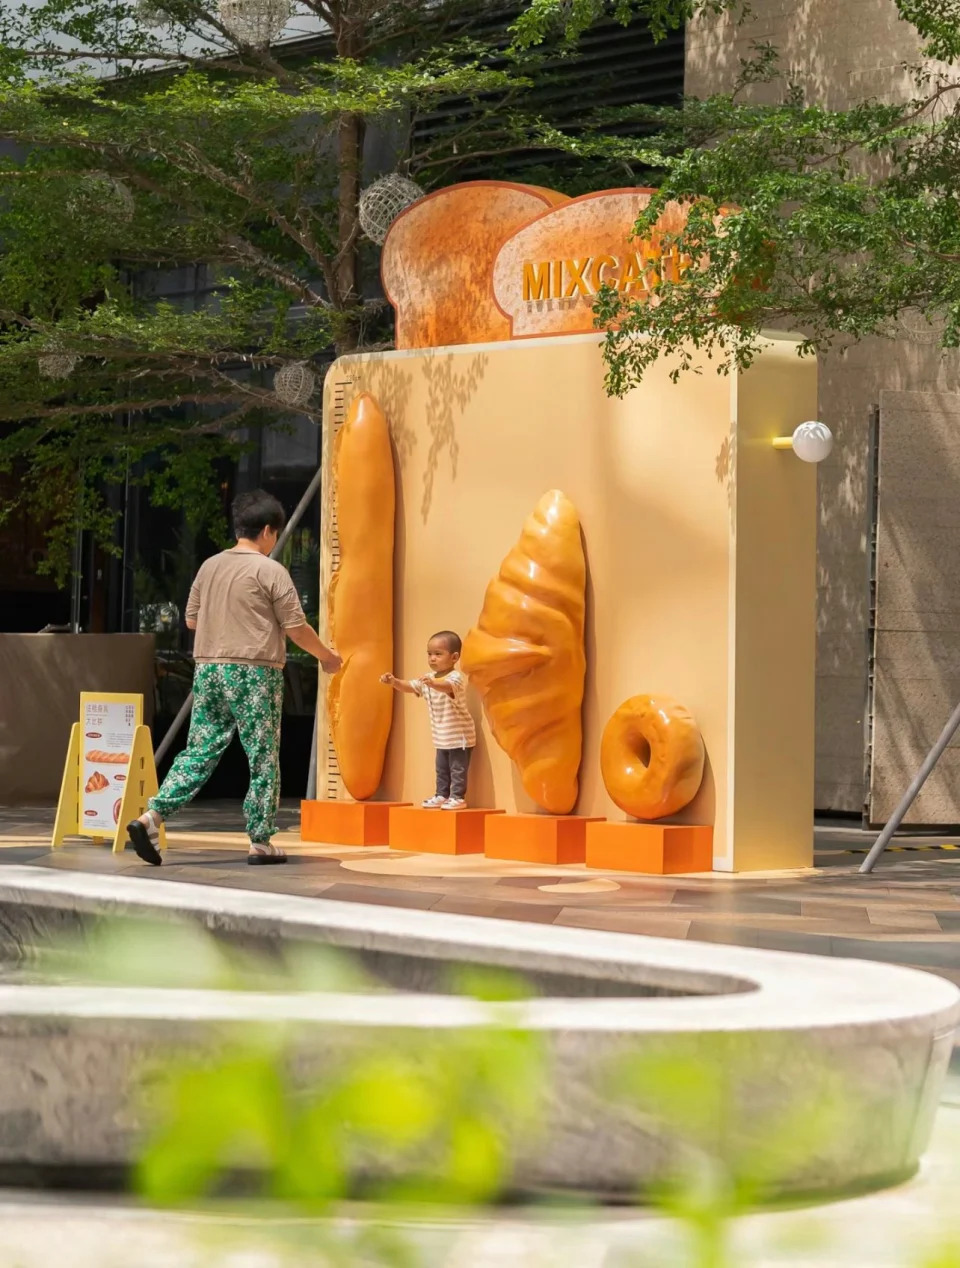 深圳旅遊｜深圳萬象食家變身夢幻麵包世界！7大巨型打卡位：全國首個窩夫圖書角、牛角包鞦韆、吐司夢幻飛屋